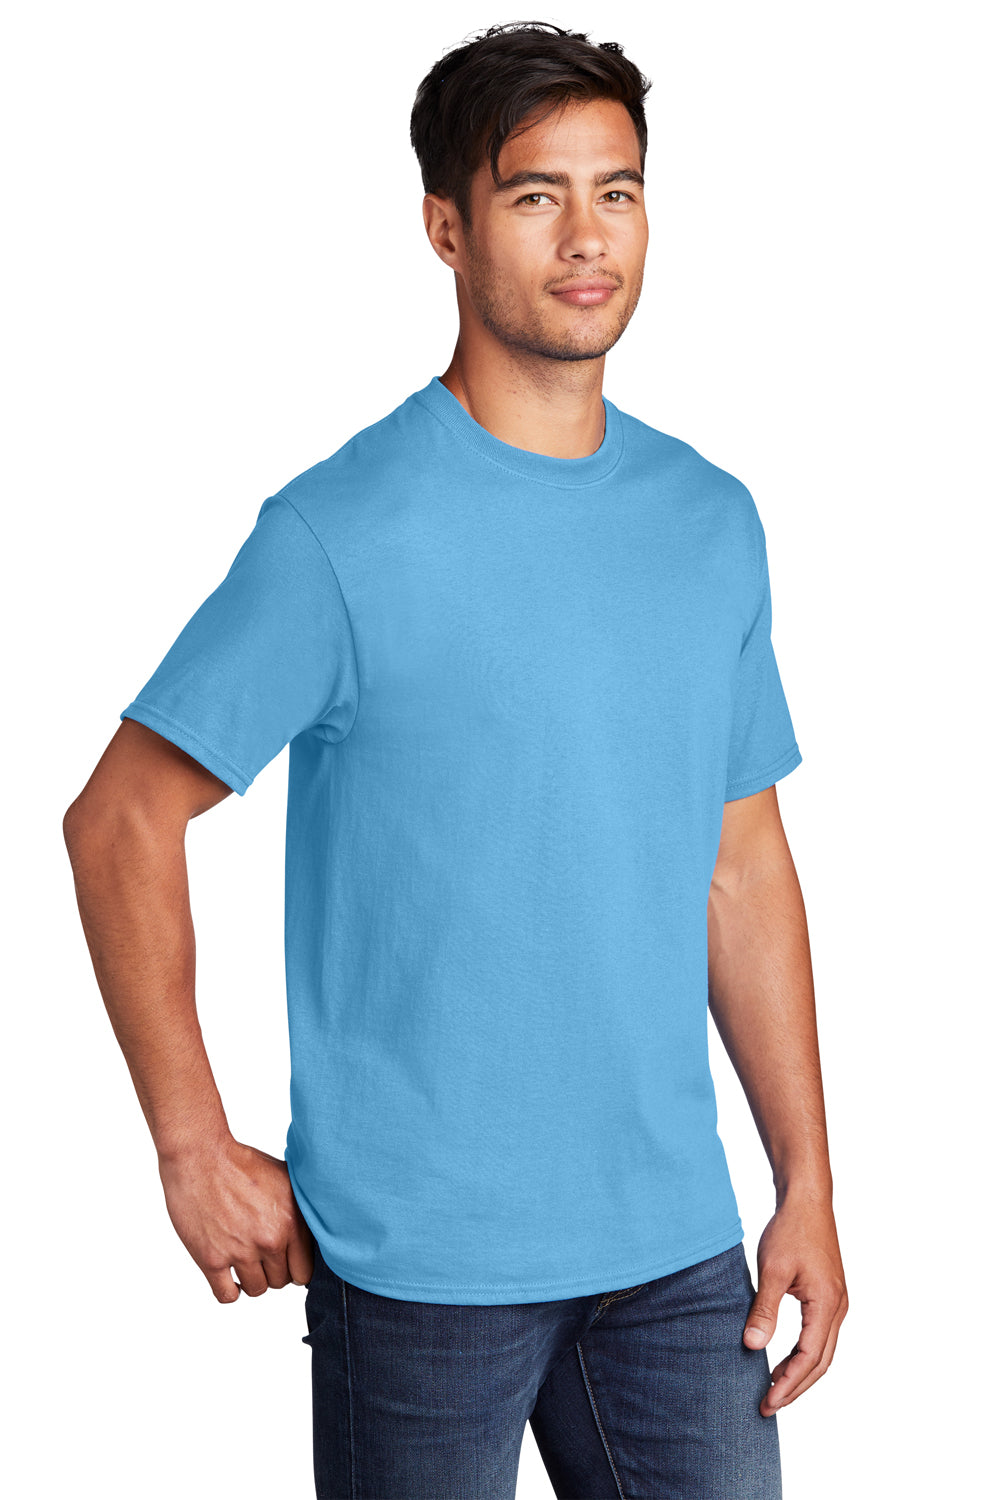 Port & Company PC54DTG Core Cotton DTG Short Sleeve Crewneck T-Shirt Aquatic Blue 3Q